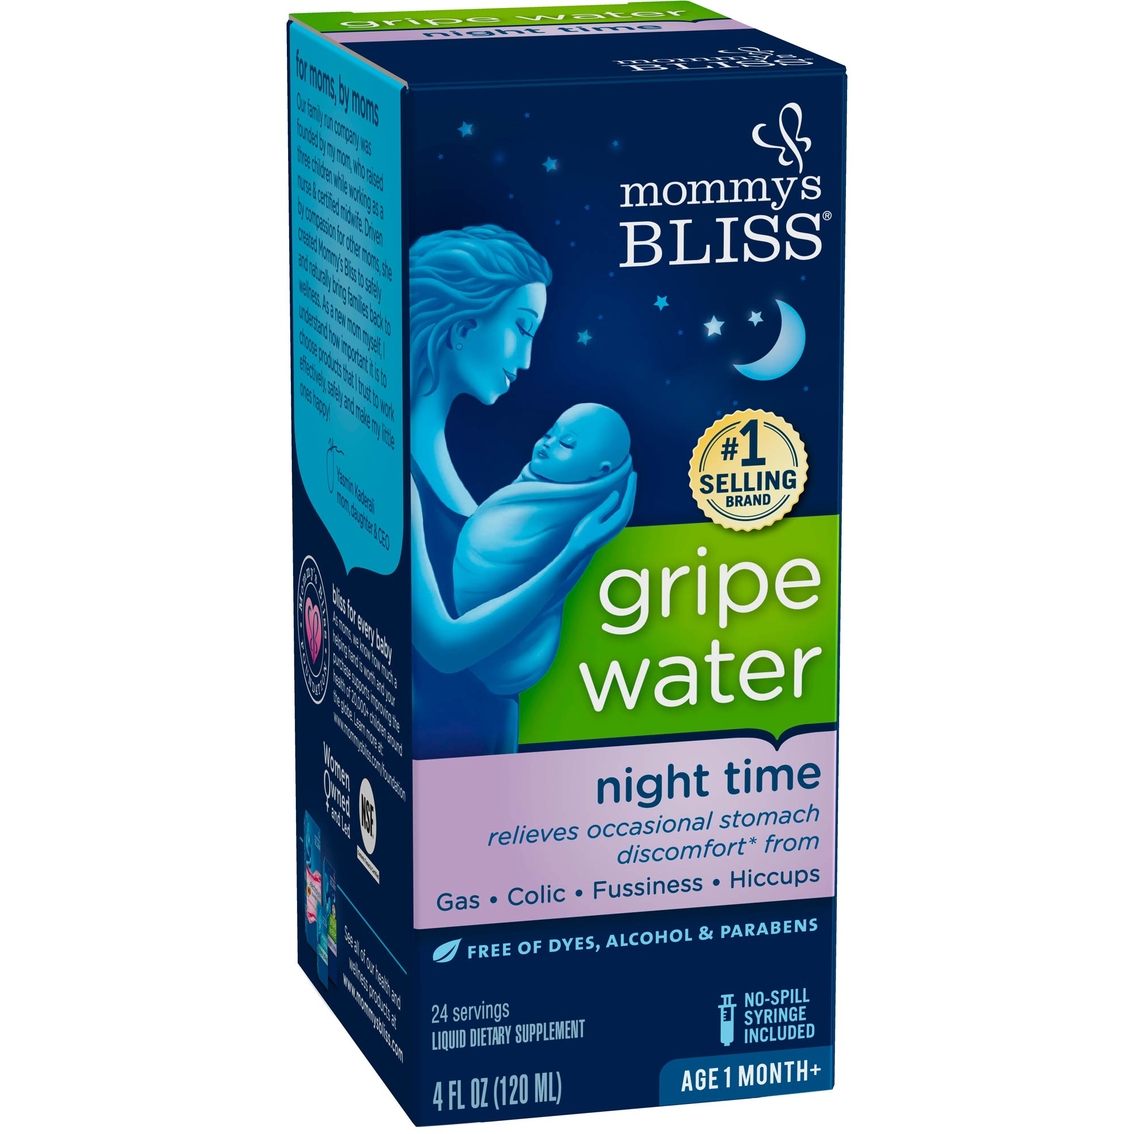 gripe water